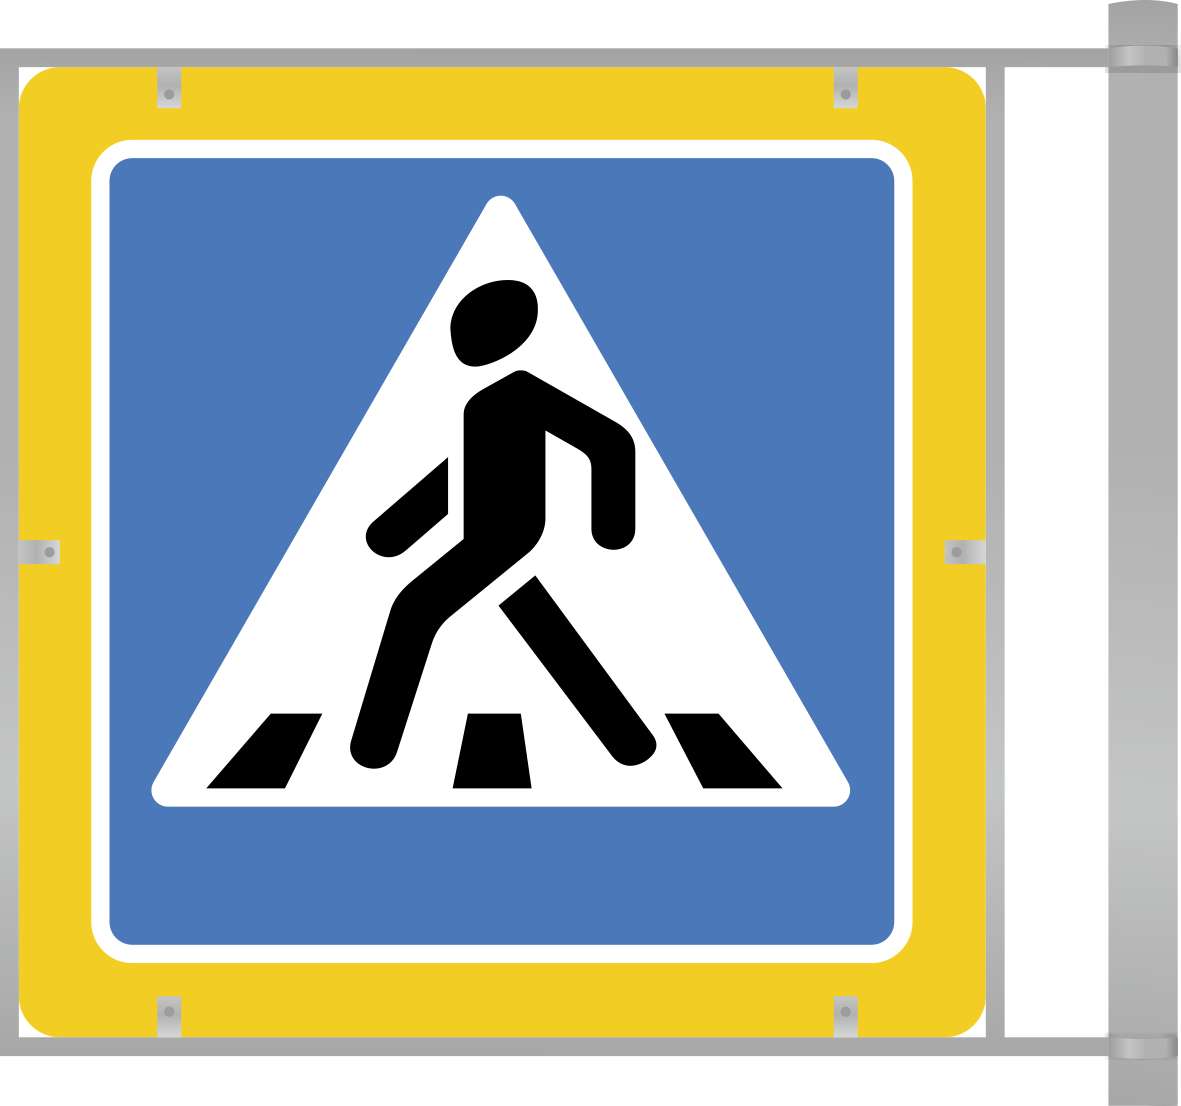 Каркасный дорожный знак 5.19.1/5.19.2 (двухсторонний). Пешеходный переход на флуоресцентном фоне. Оцинкованный металл на